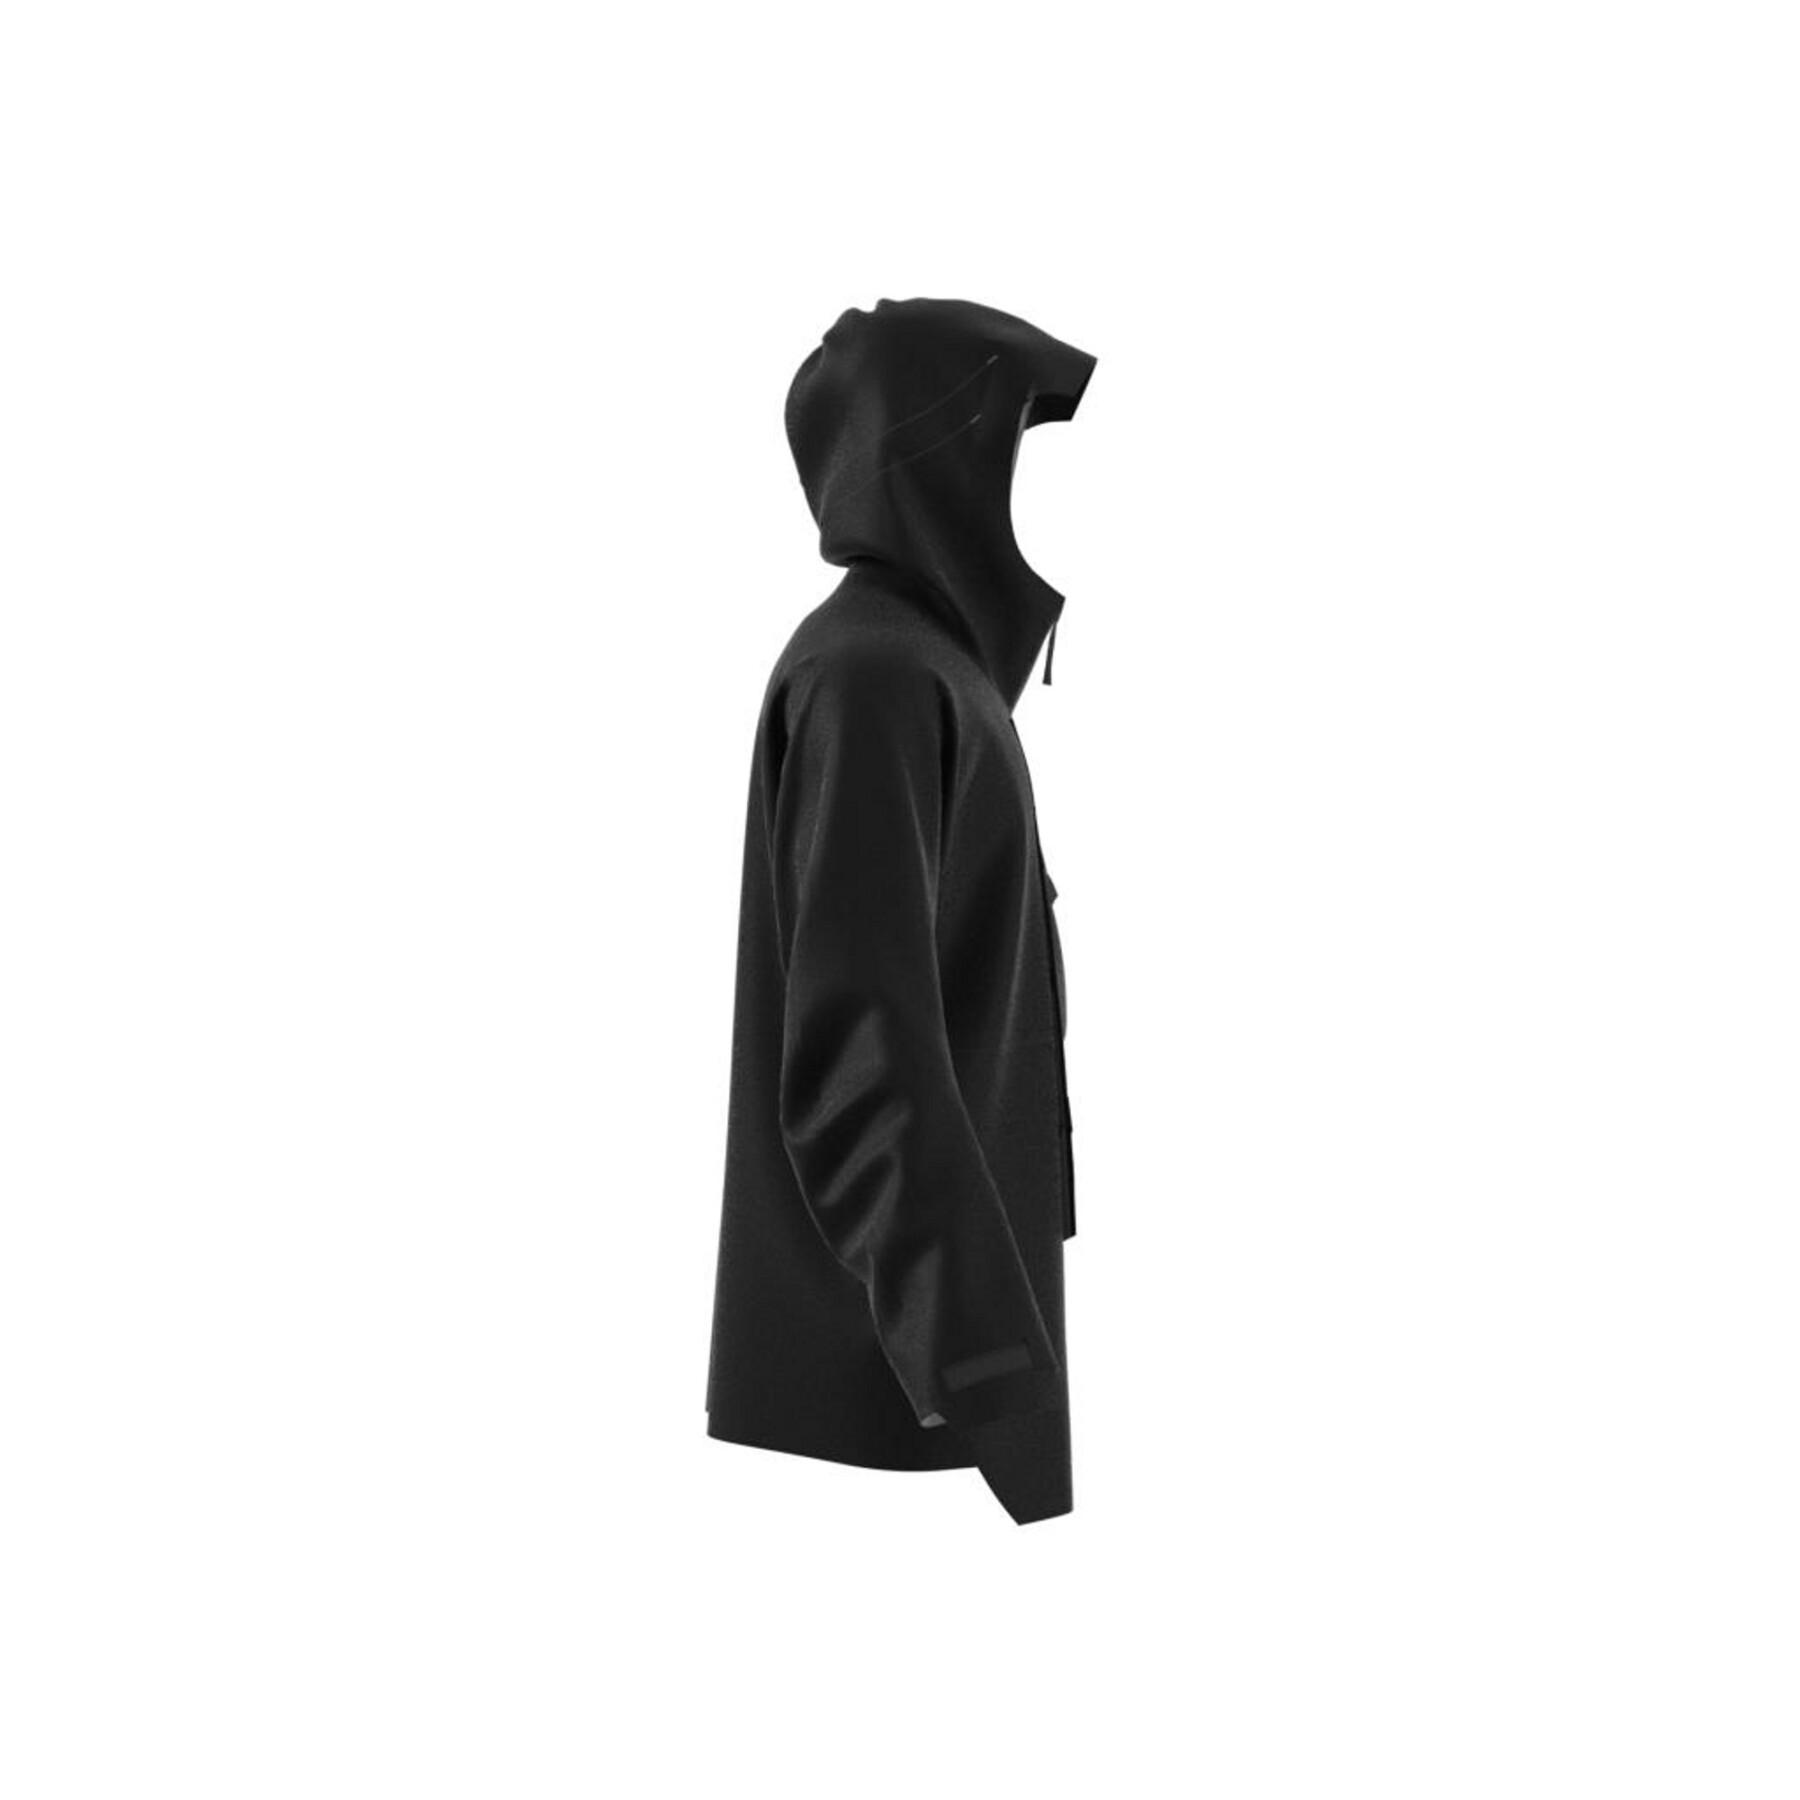 Rain jacket adidas Terrex Xploric